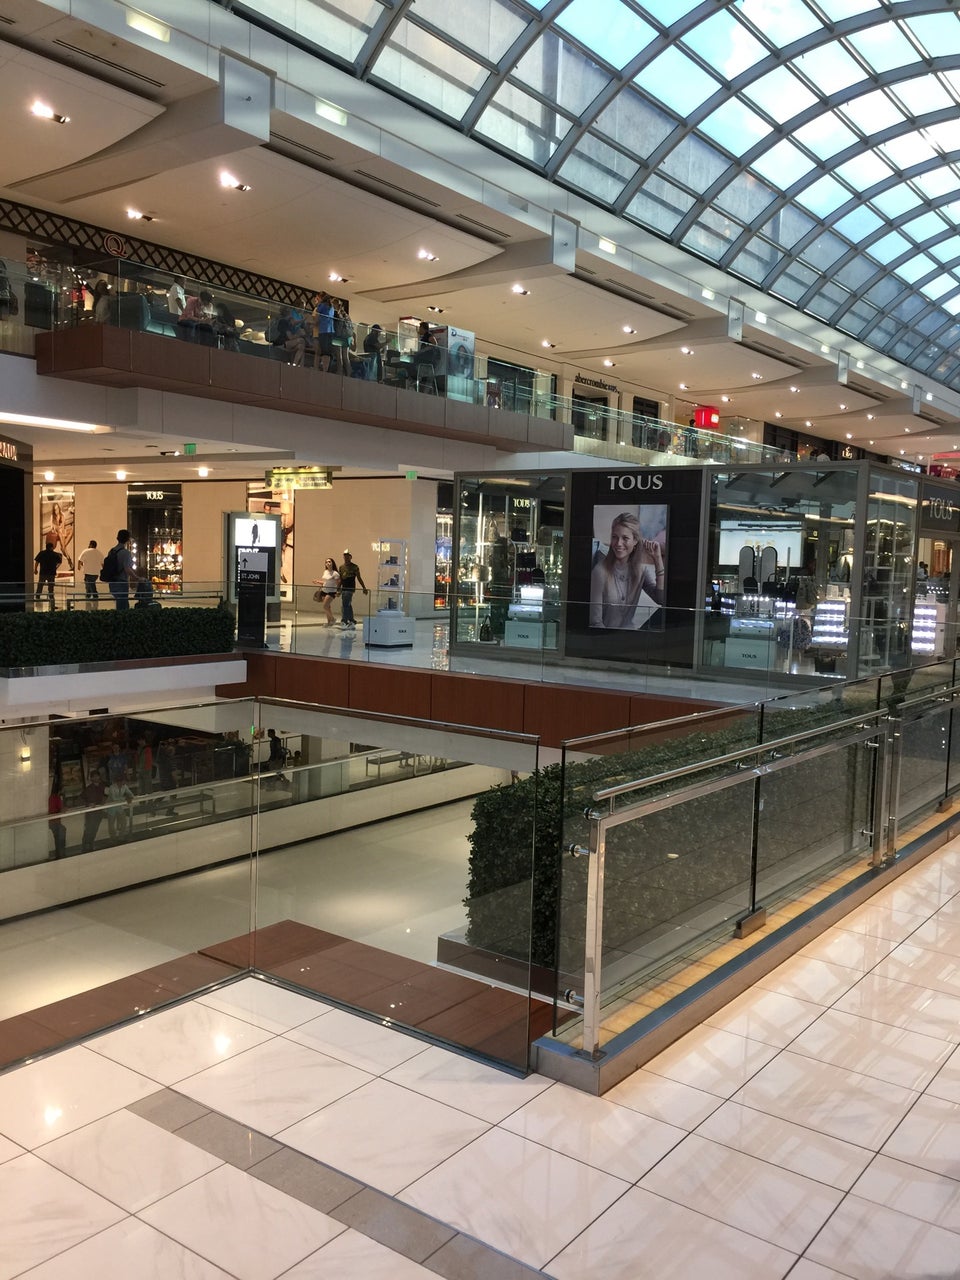 Houston Galleria - Galleria Houston Shopping Mall